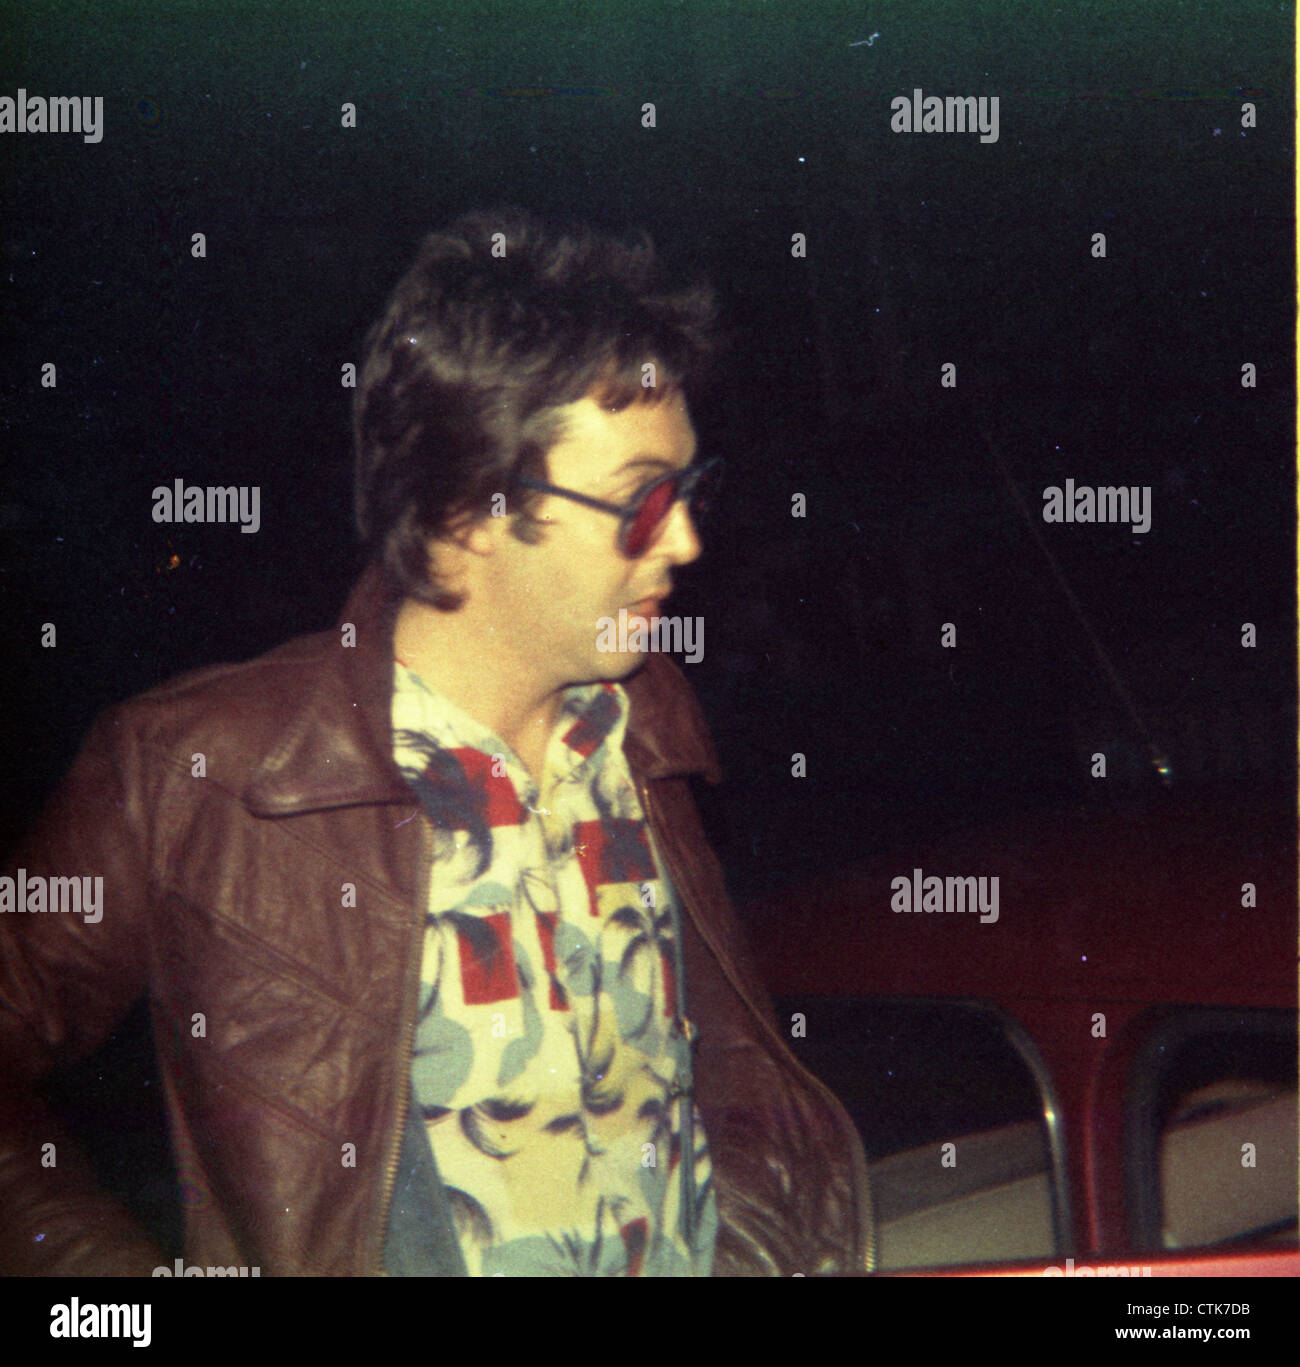 003854 - Paul McCartney outside Abbey Road Studios, London in 1975 Stock Photo